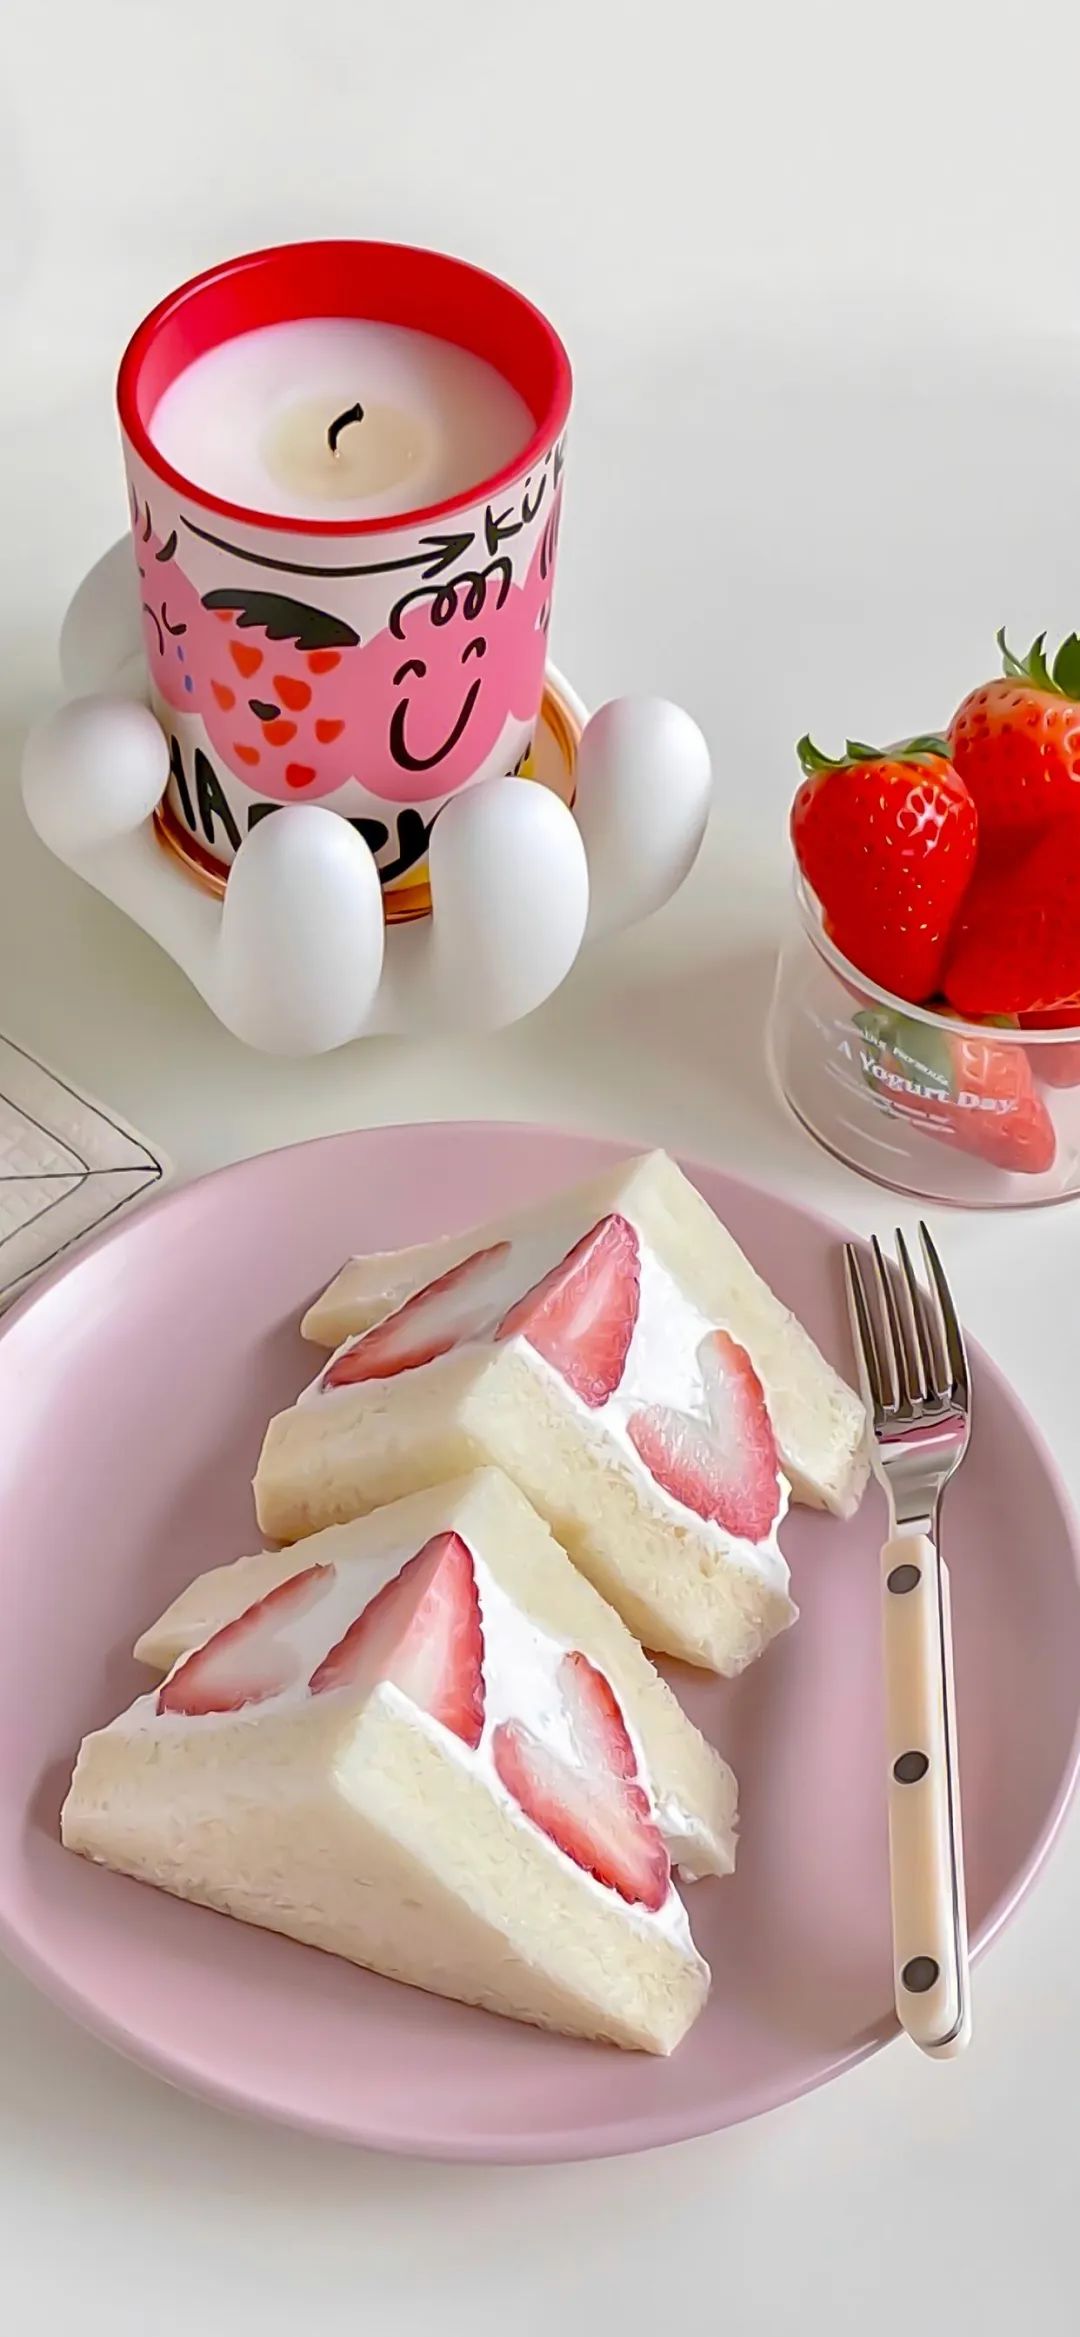 【美食图片真实照片】草莓甜品壁纸图片